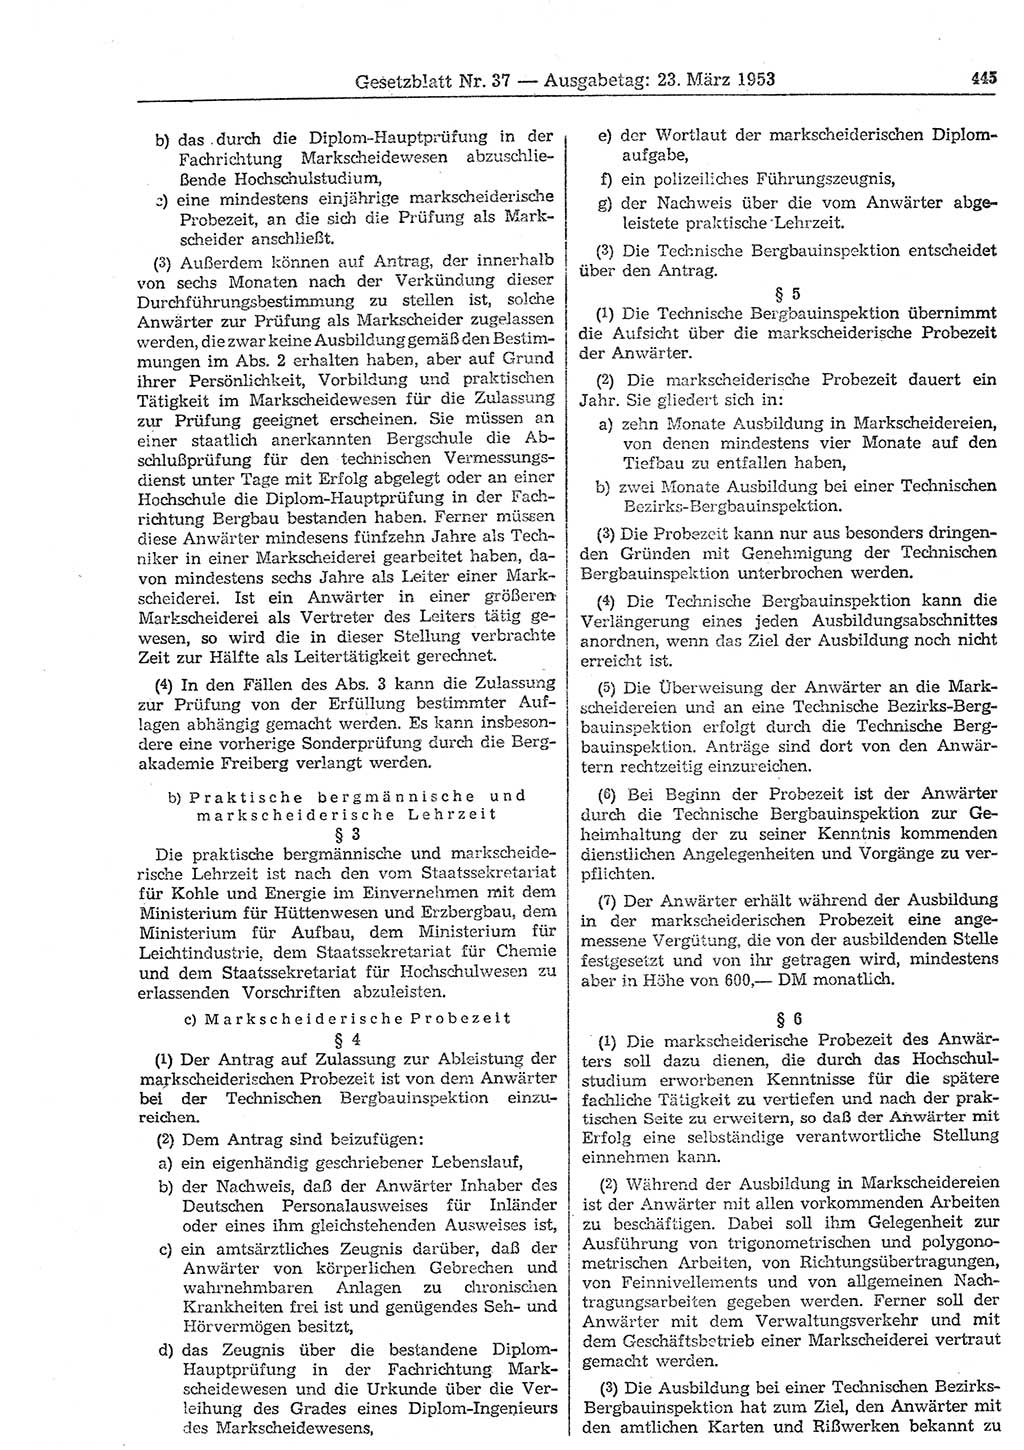 Gesetzblatt (GBl.) der Deutschen Demokratischen Republik (DDR) 1953, Seite 445 (GBl. DDR 1953, S. 445)